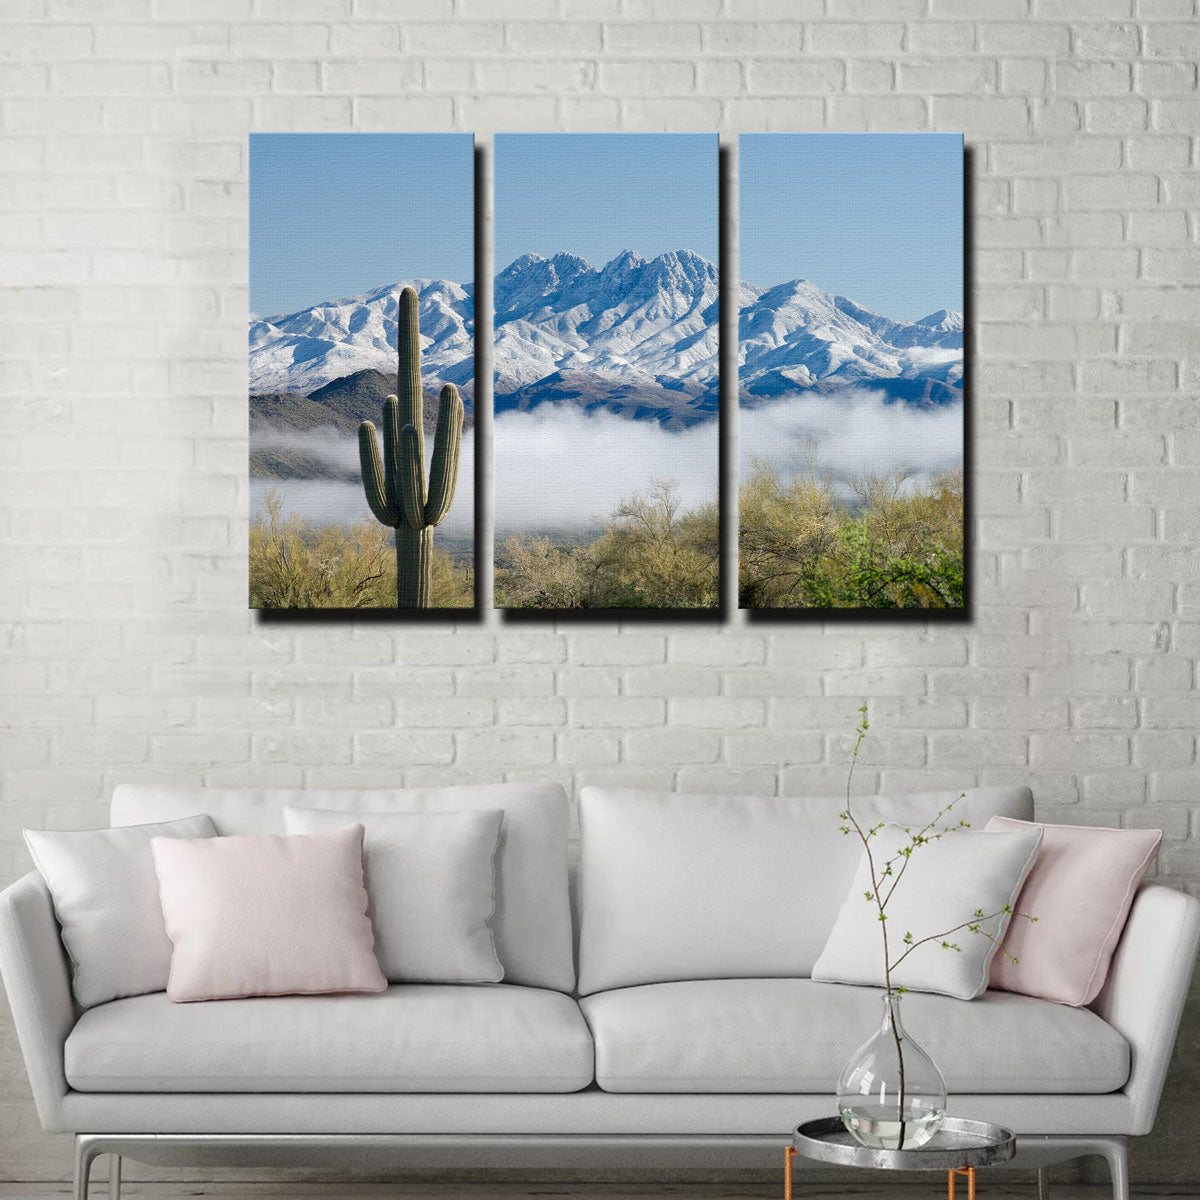 Saguaro and Four Peaks